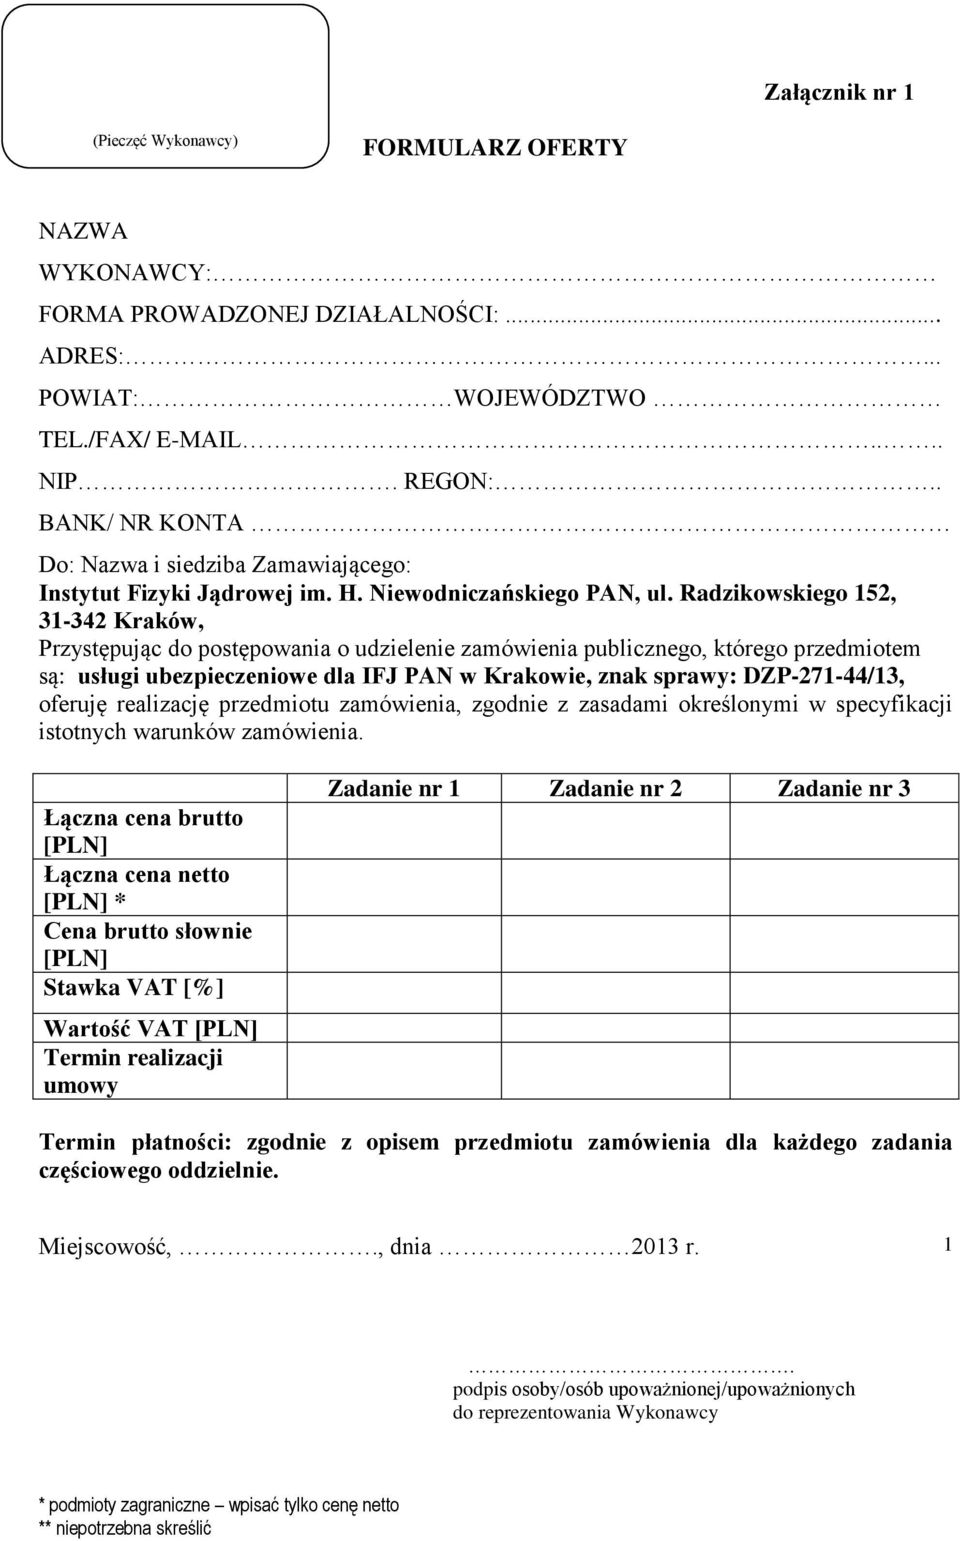 Radzikowskiego 152, 31-342 Kraków, Przystępując do postępowania o udzielenie zamówienia publicznego, którego przedmiotem są: usługi ubezpieczeniowe dla IFJ PAN w Krakowie, znak sprawy: DZP-271-44/13,